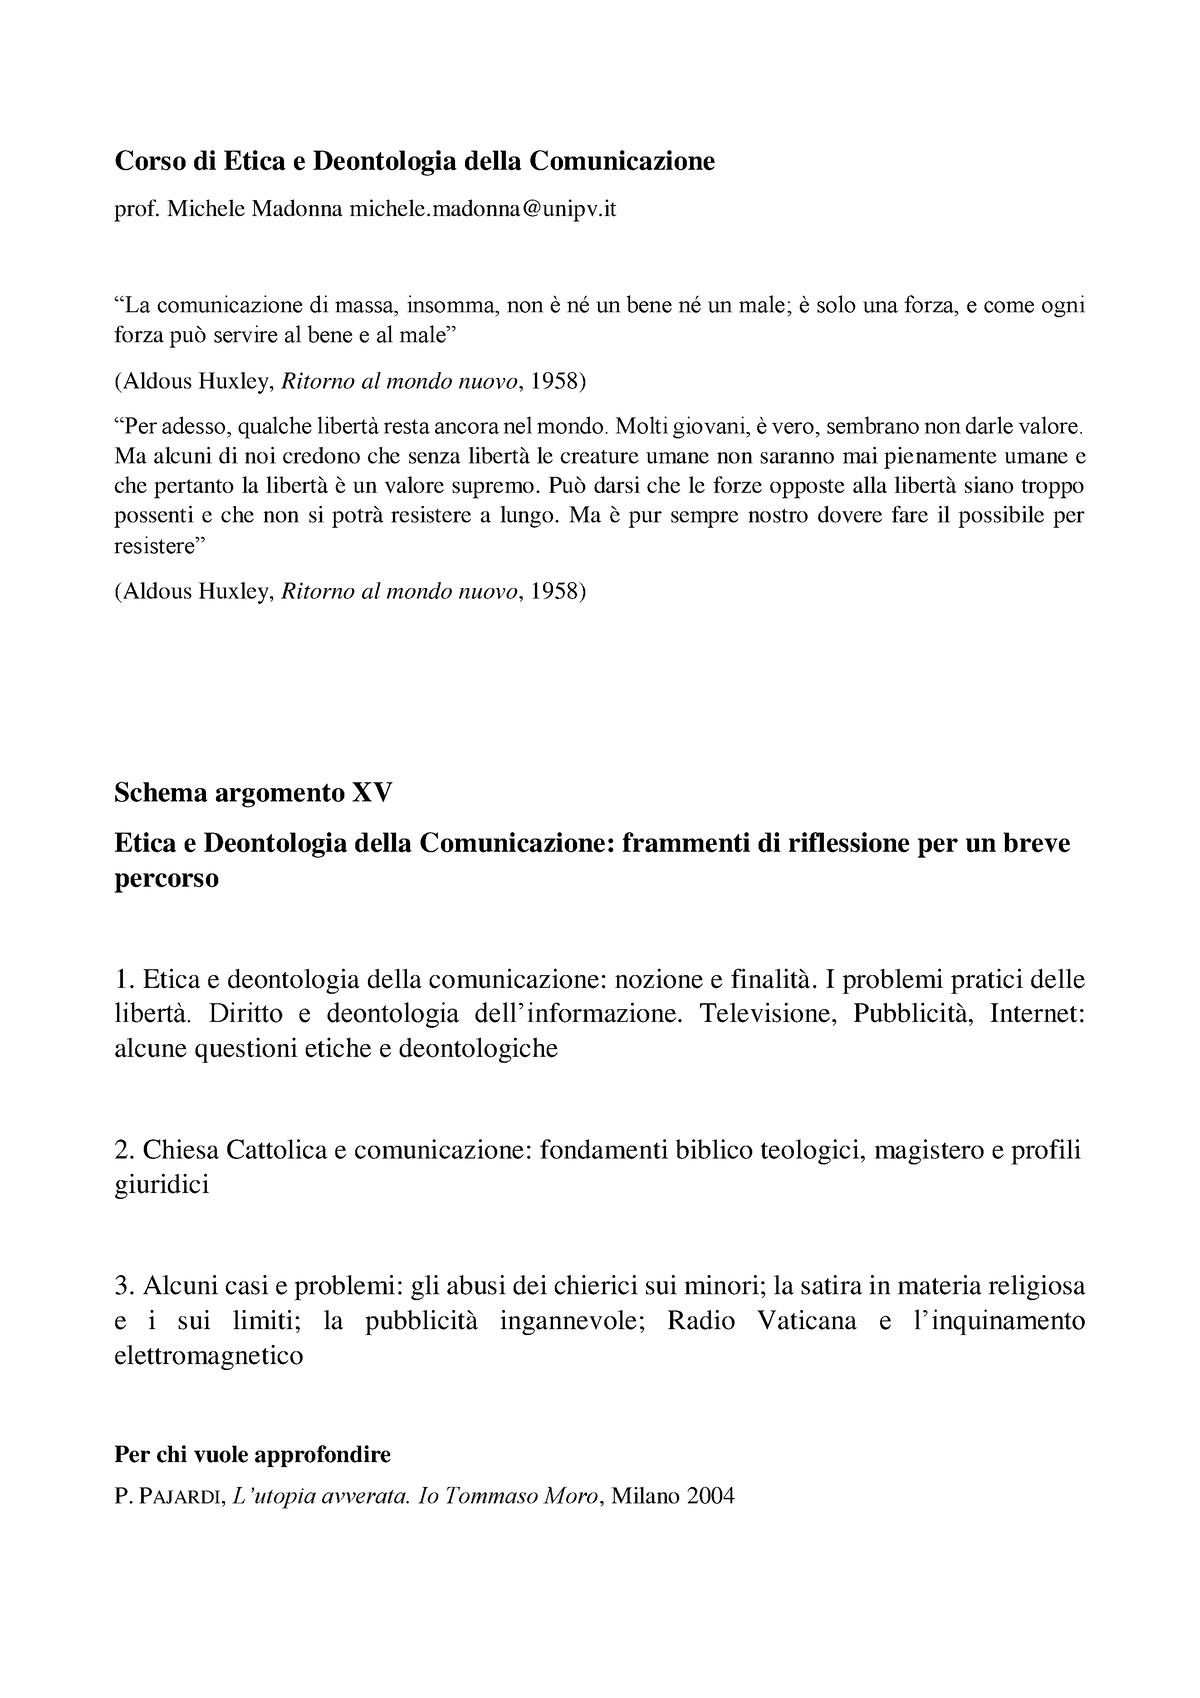 Schema Argomento 15 Corso Di Etica E Deontologia Della Comunicazione Prof Michele Madonna 7560